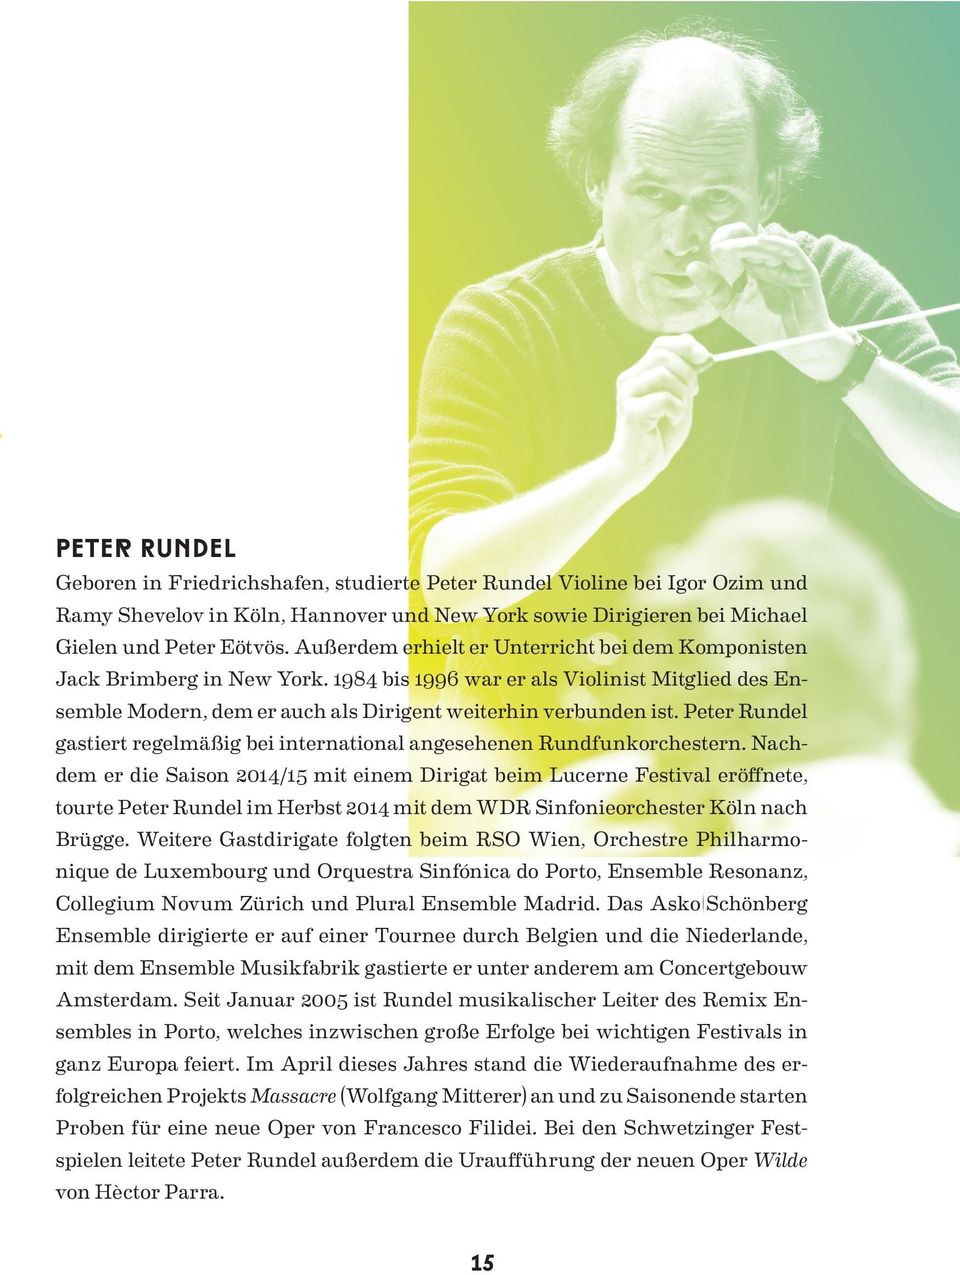 Peter Rundel gastiert regelmäßig bei international angesehenen Rundfunkorchestern.